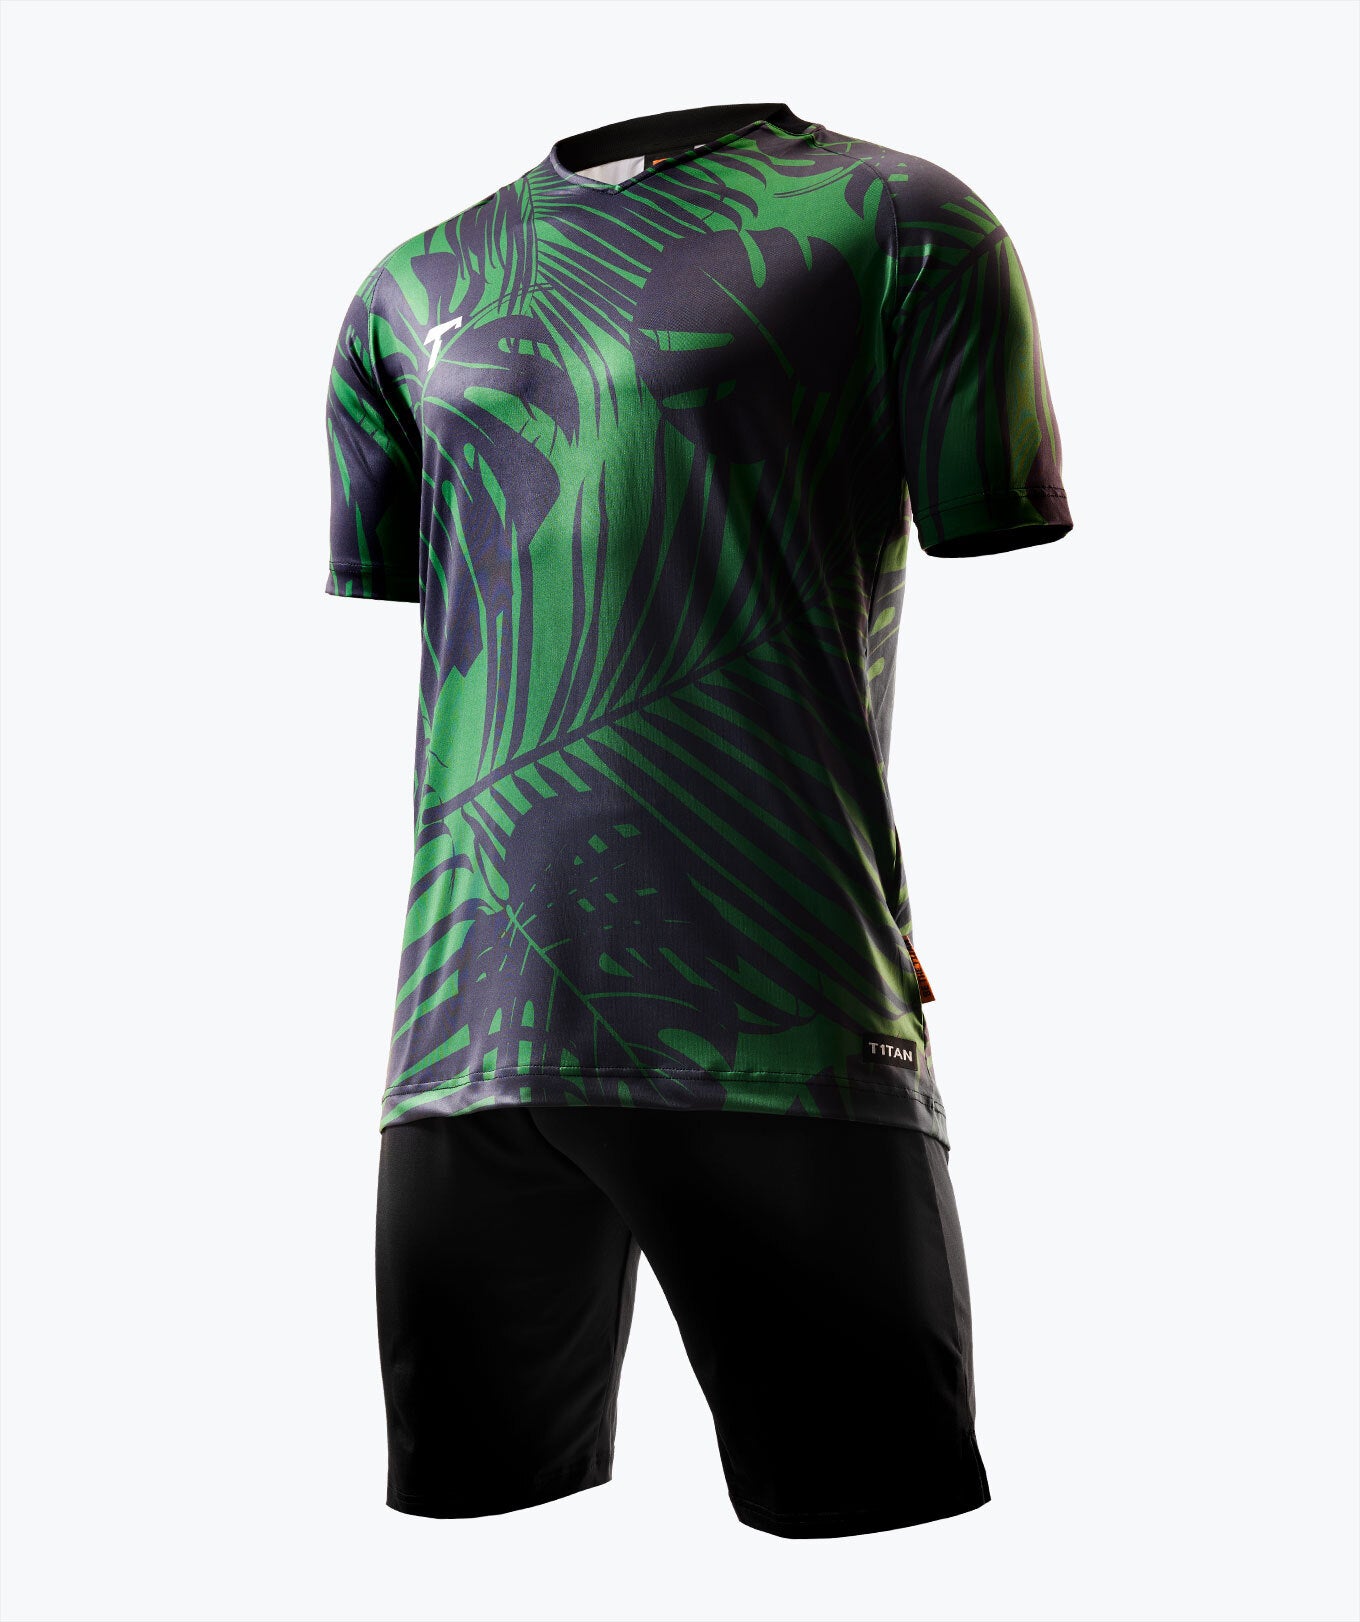 New model football jerseys for goalkeeper custom design goalie